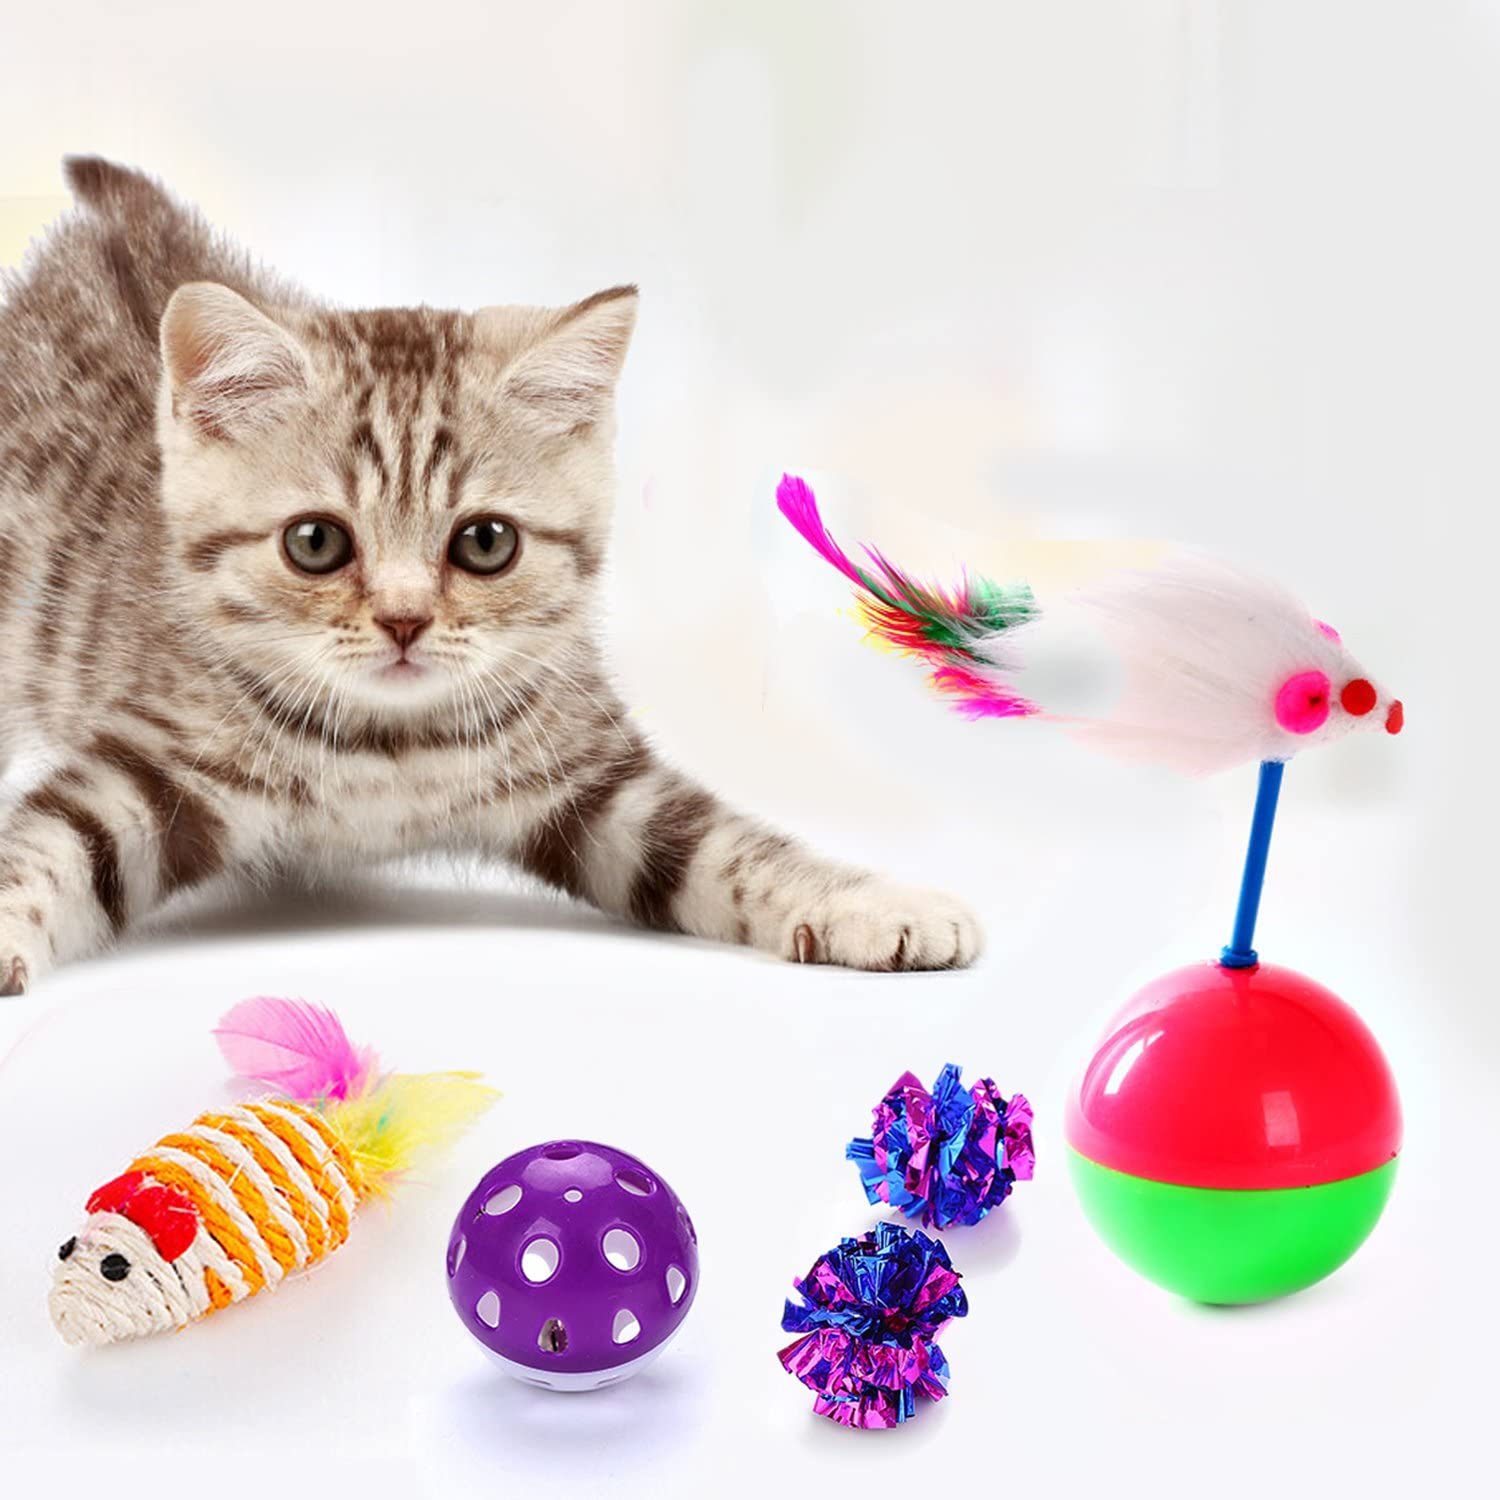  Legendog Juguetes para Gatos, 17Pcs Juguetes Gatos, Juguete Interactivo para Gatos con Plumas para Kitty (17 Pcs) 